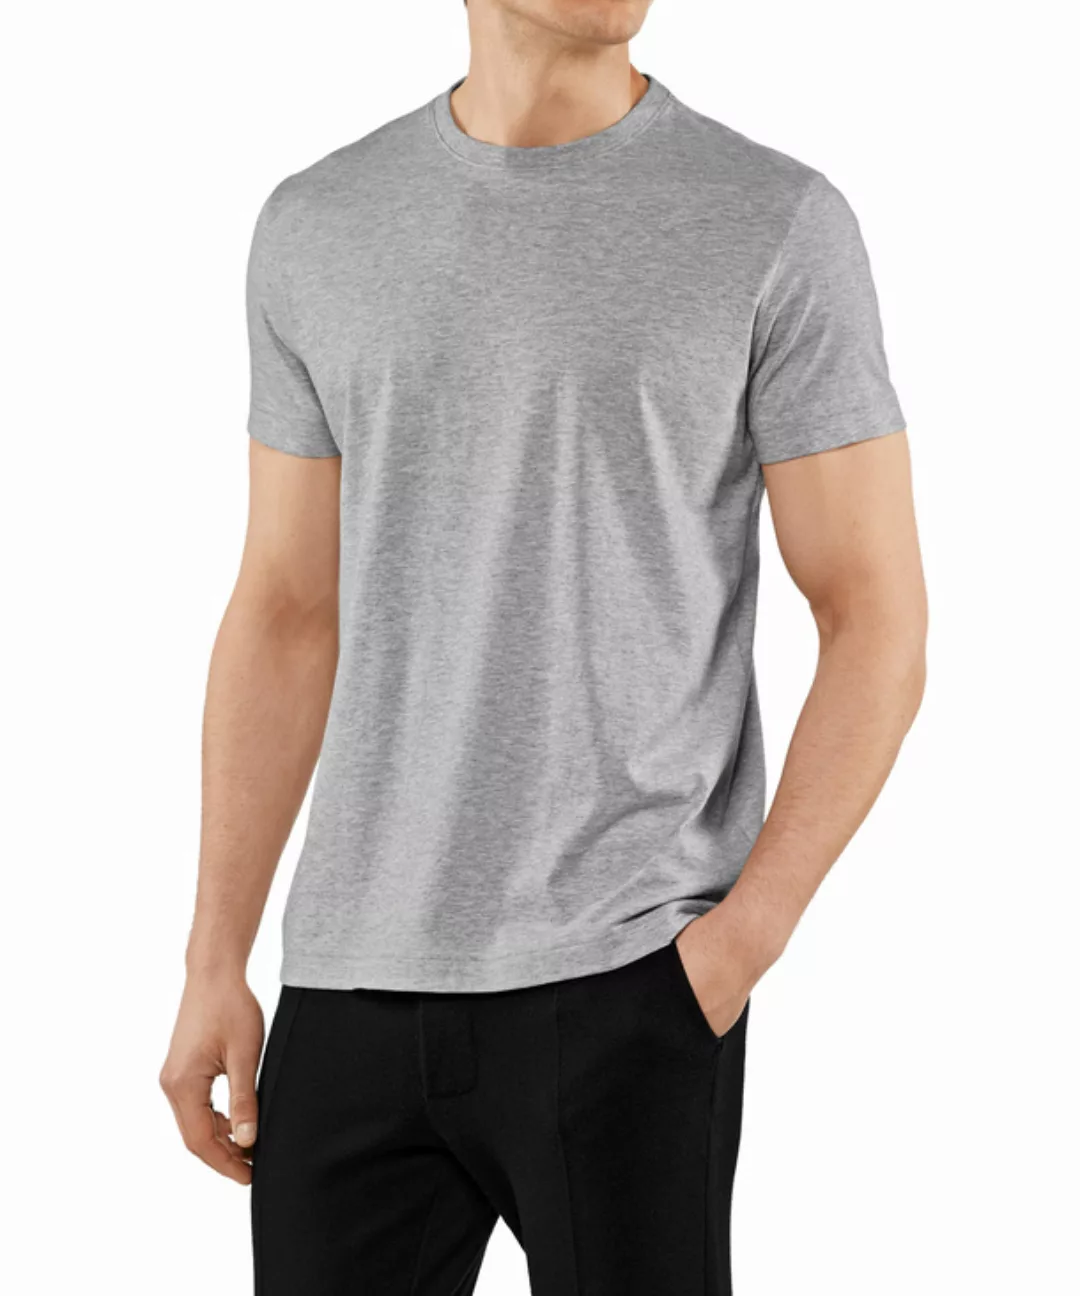 FALKE Herren T-Shirt Rundhals, Polo, L, Grau, Uni,Struktur, Baumwolle, 6210 günstig online kaufen